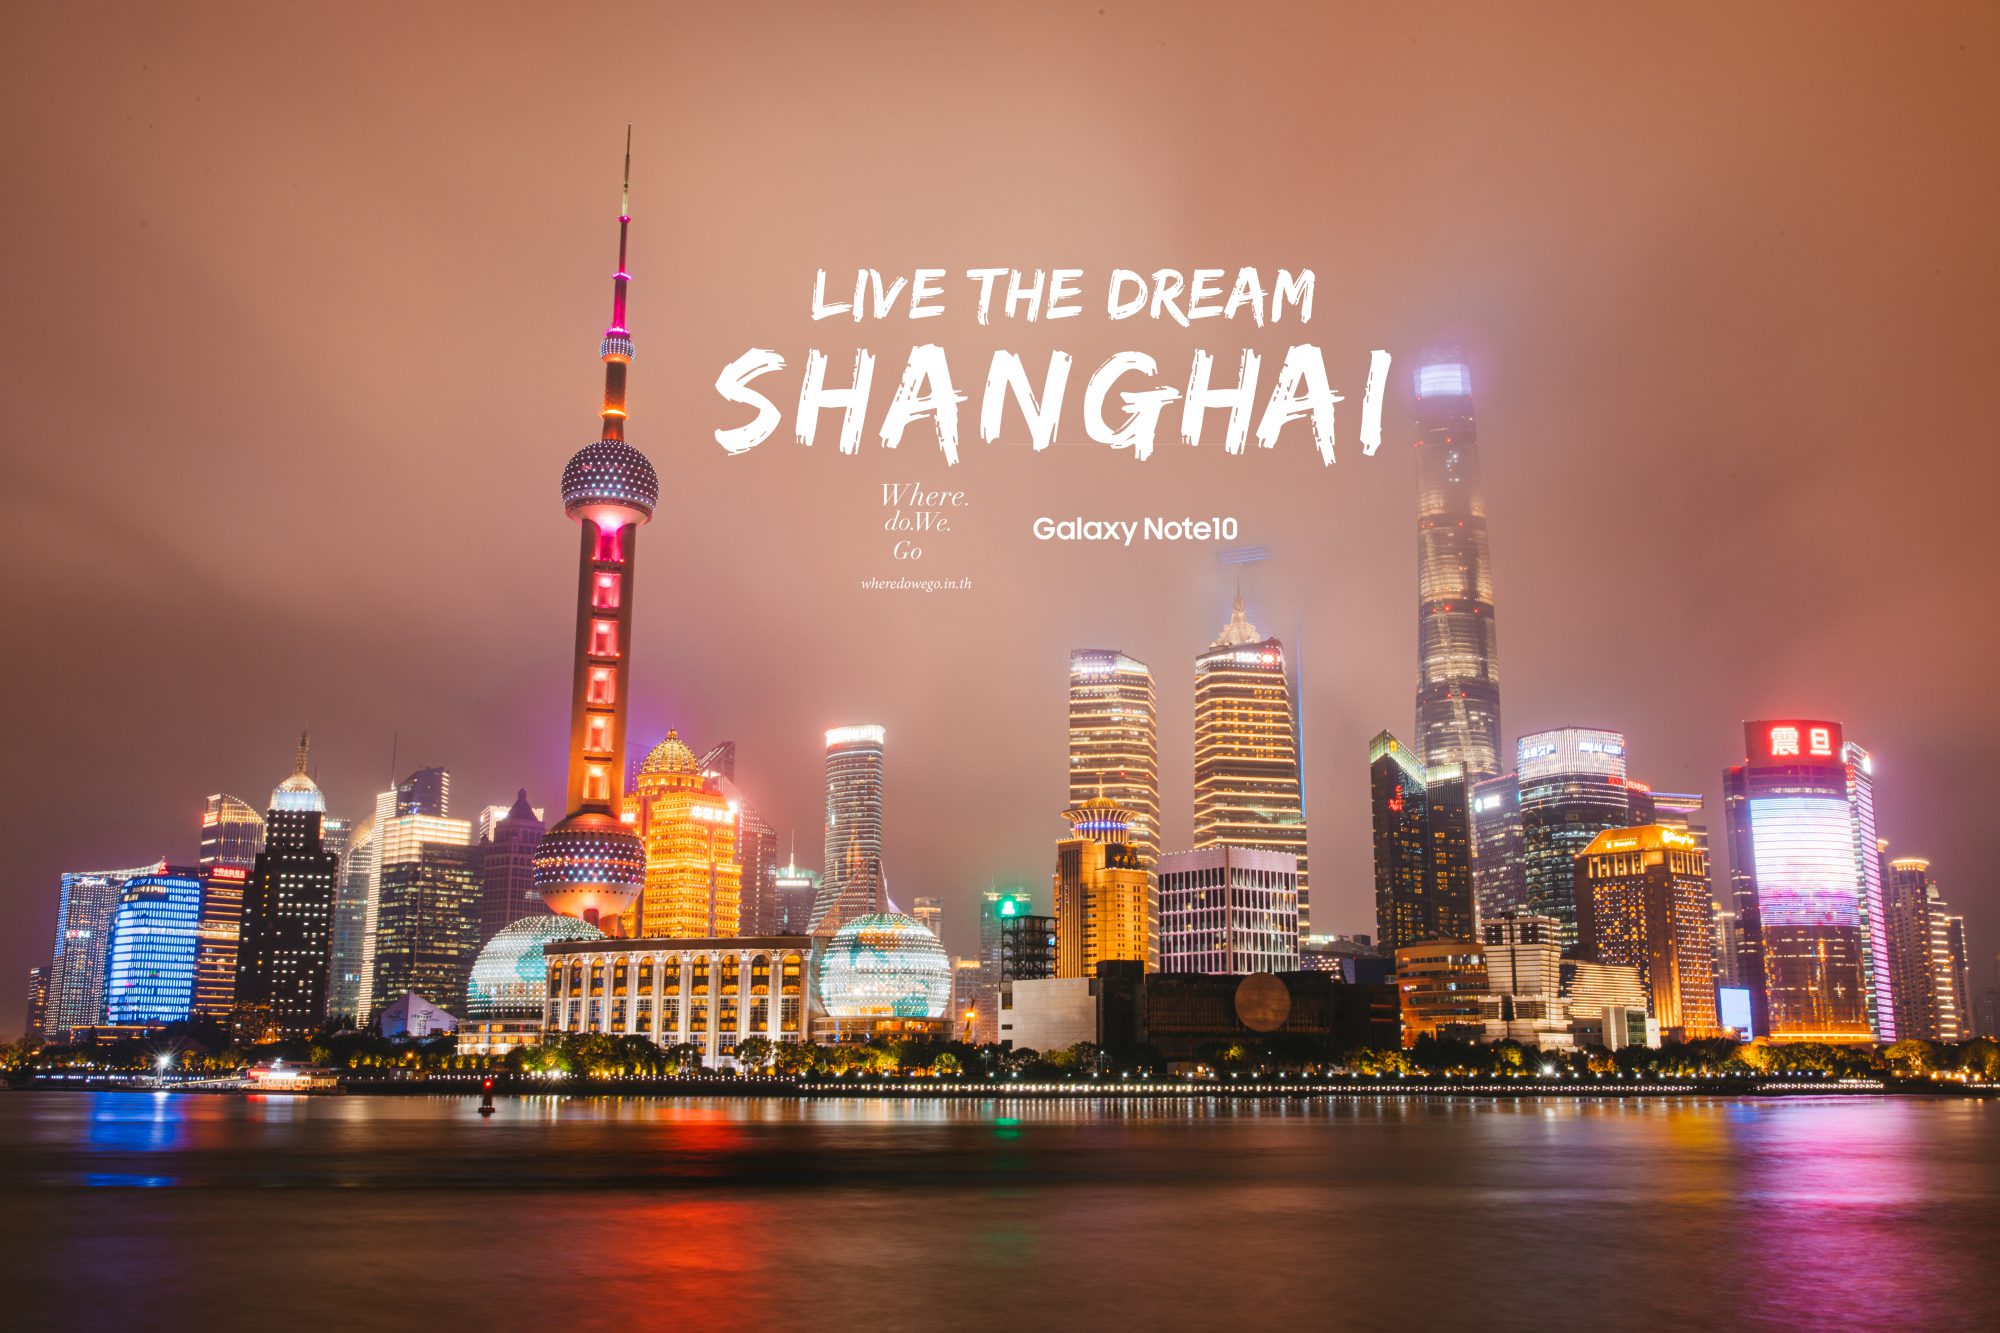 Live the dream, Shanghai